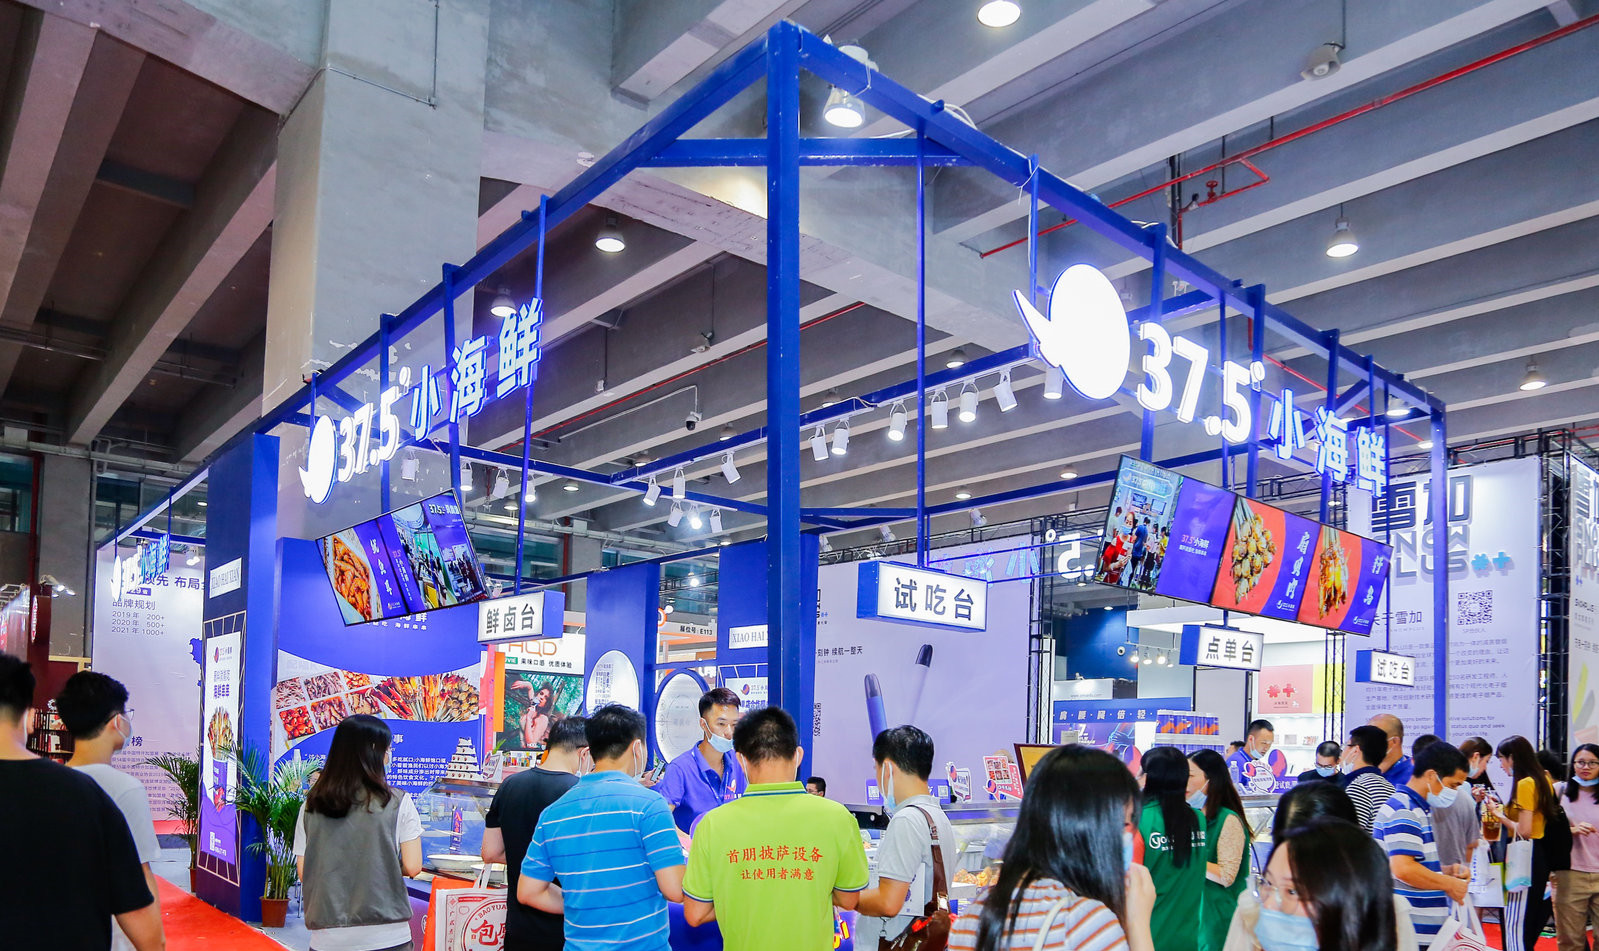 2021年广州餐饮展将在3月4-6日在琶洲展览中心举办。广州餐饮展览会始终关注国际知名连锁餐饮品牌在国内的开发和拓展趋势，为投资人提供最新的相关资讯。